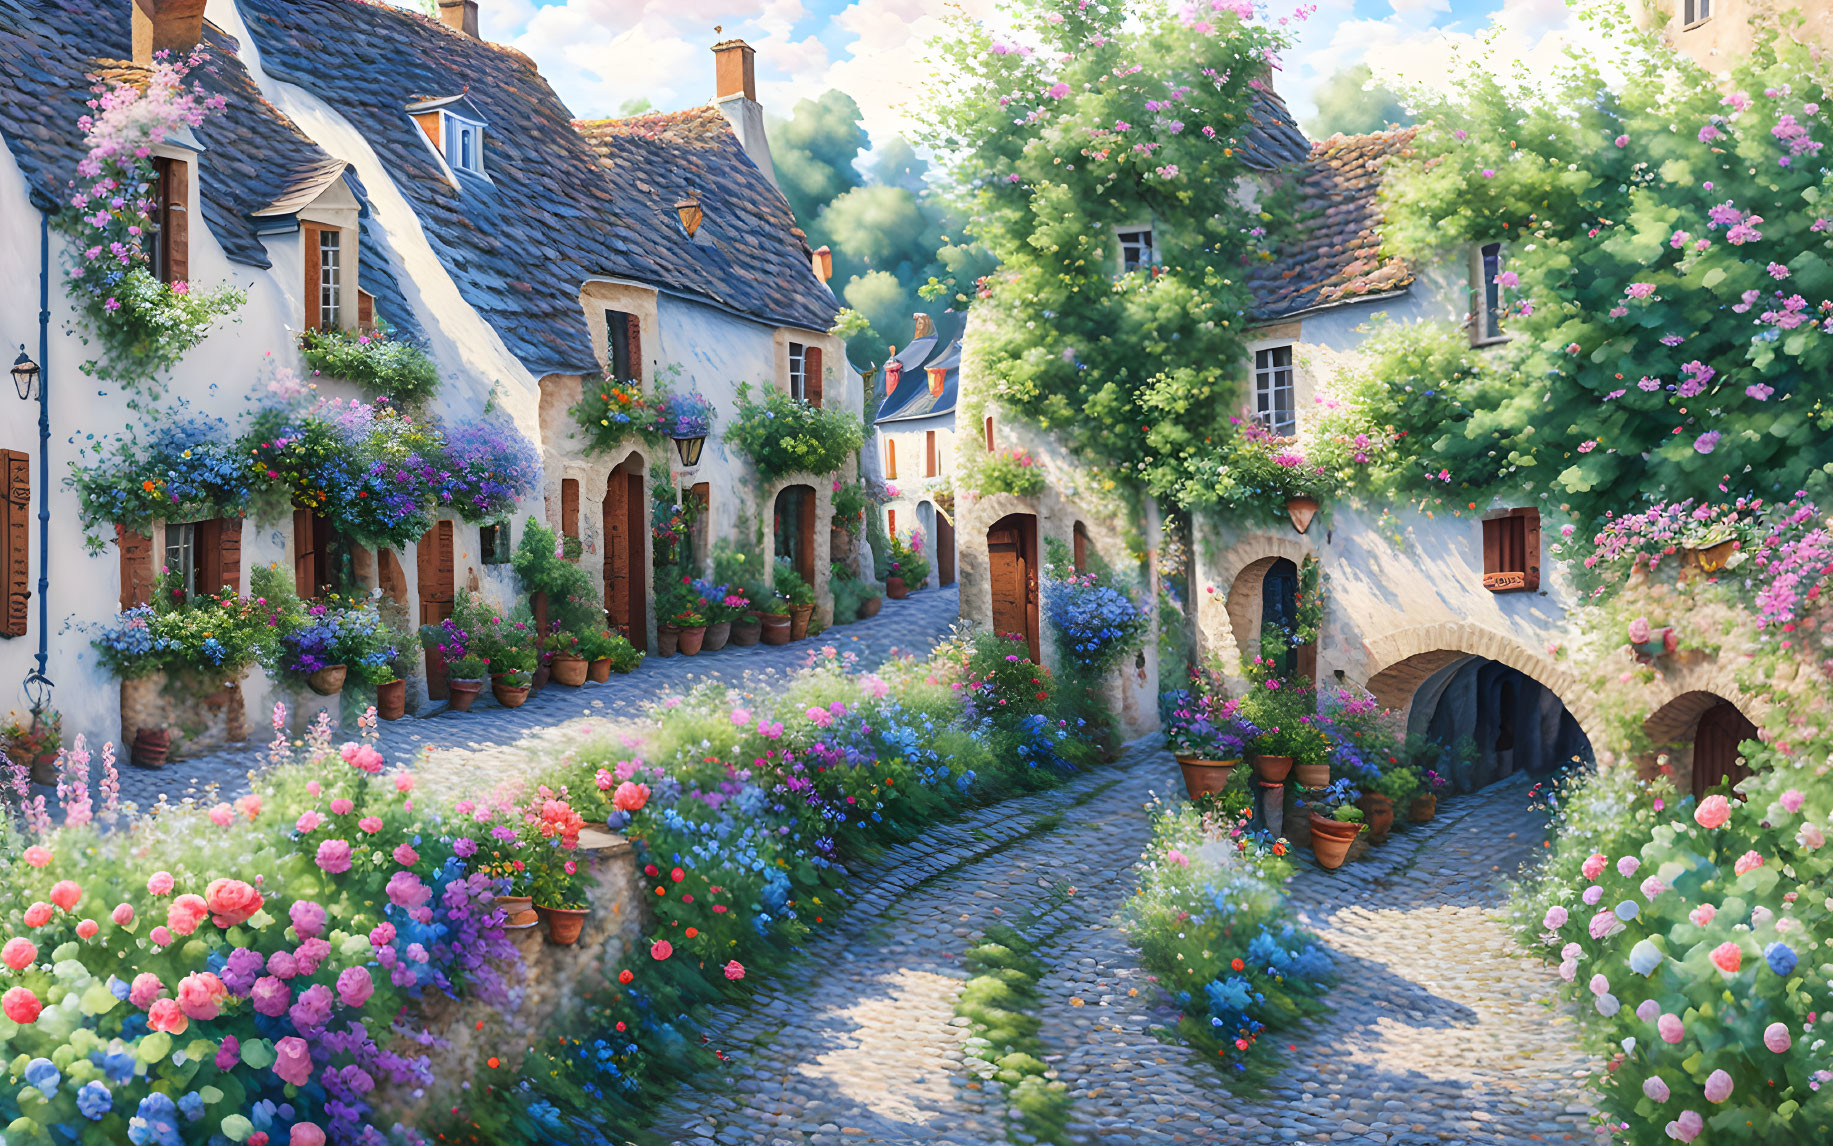 The Flower Village